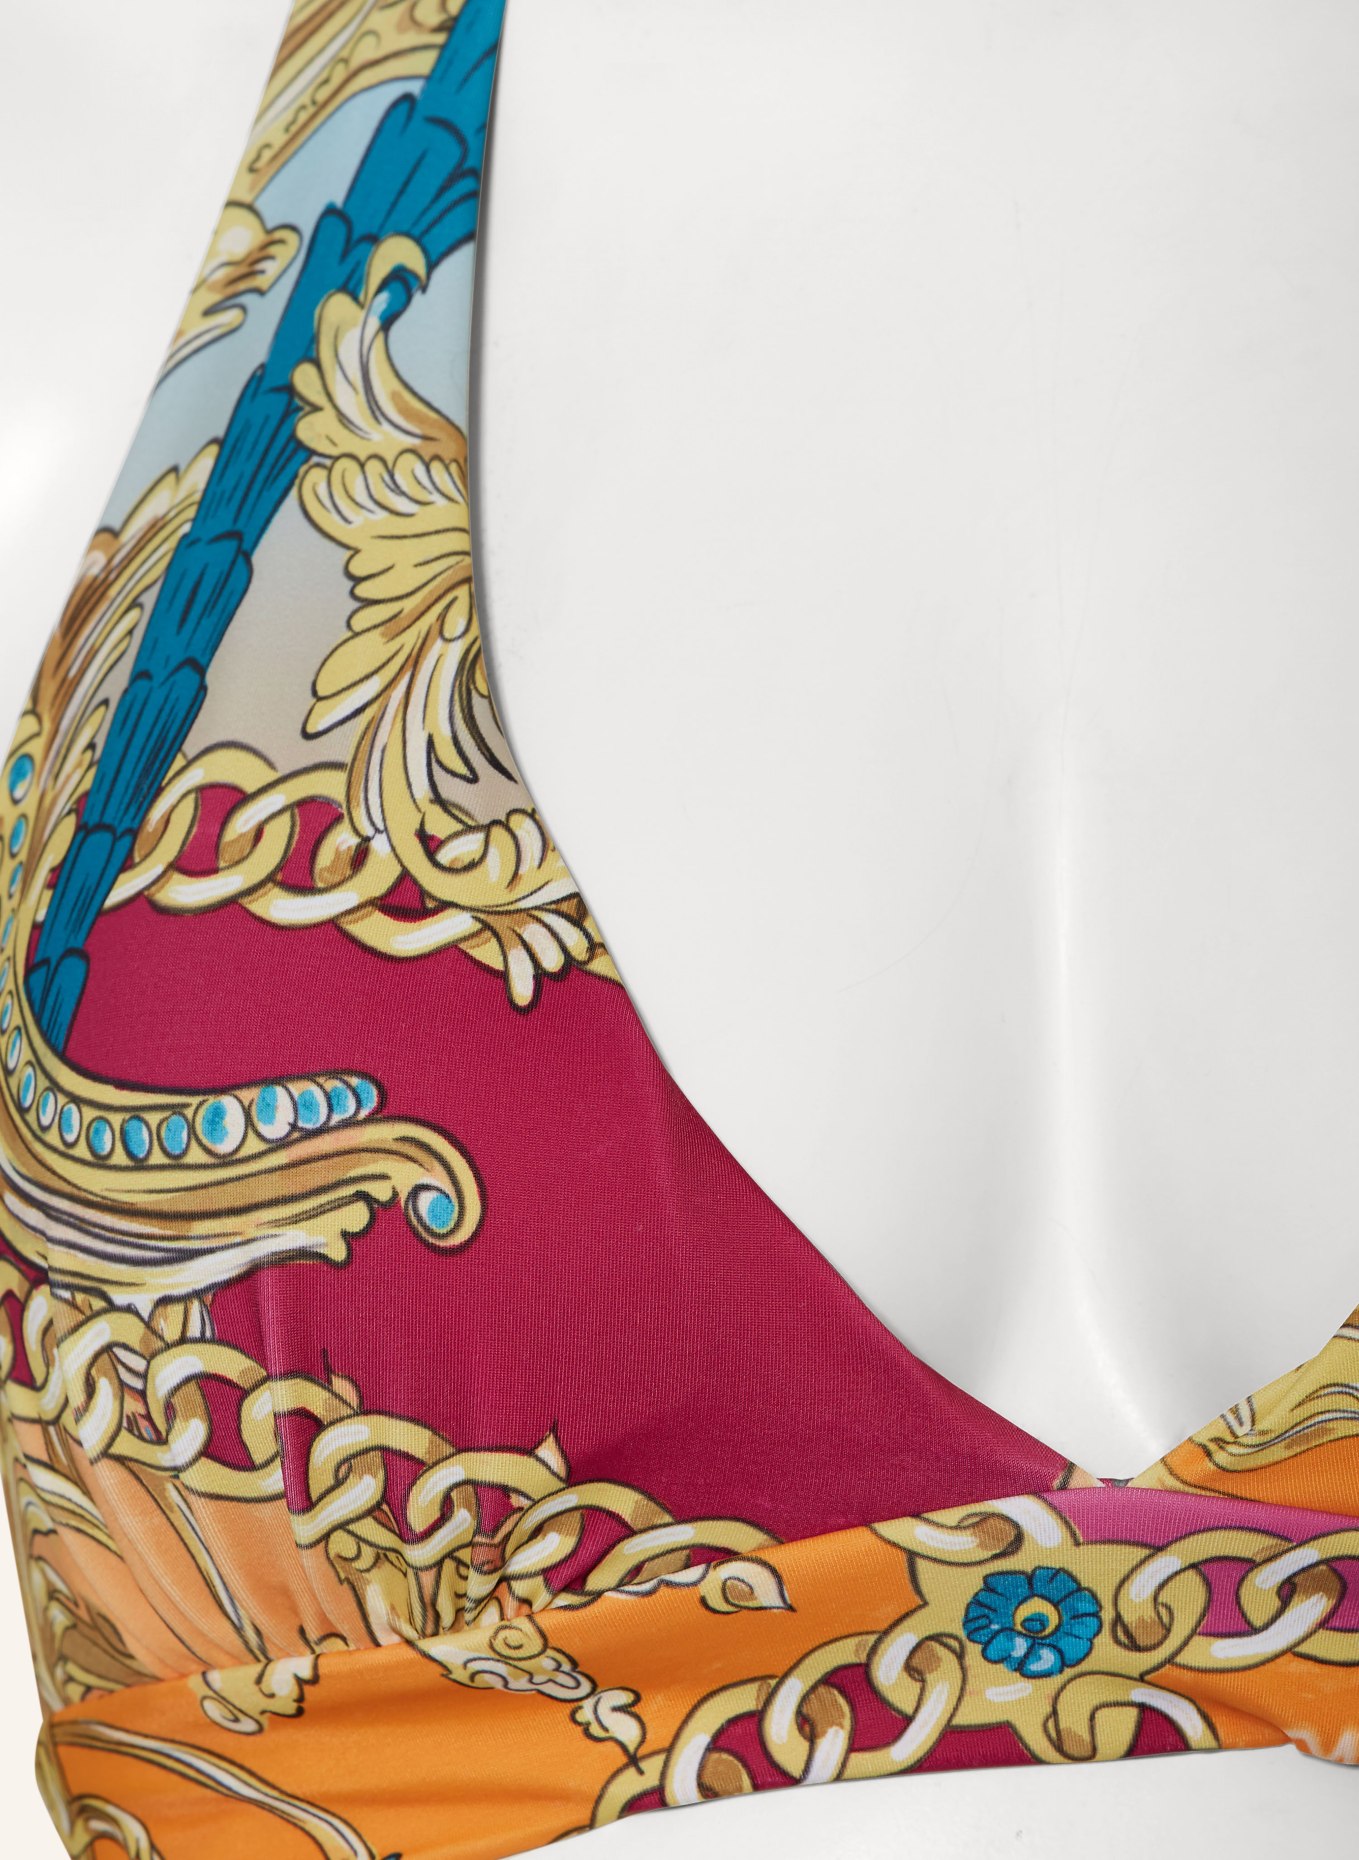 GOLDBERGH Halter neck bikini top TAN MIAMI, Color: ORANGE/ FUCHSIA/ GOLD (Image 4)